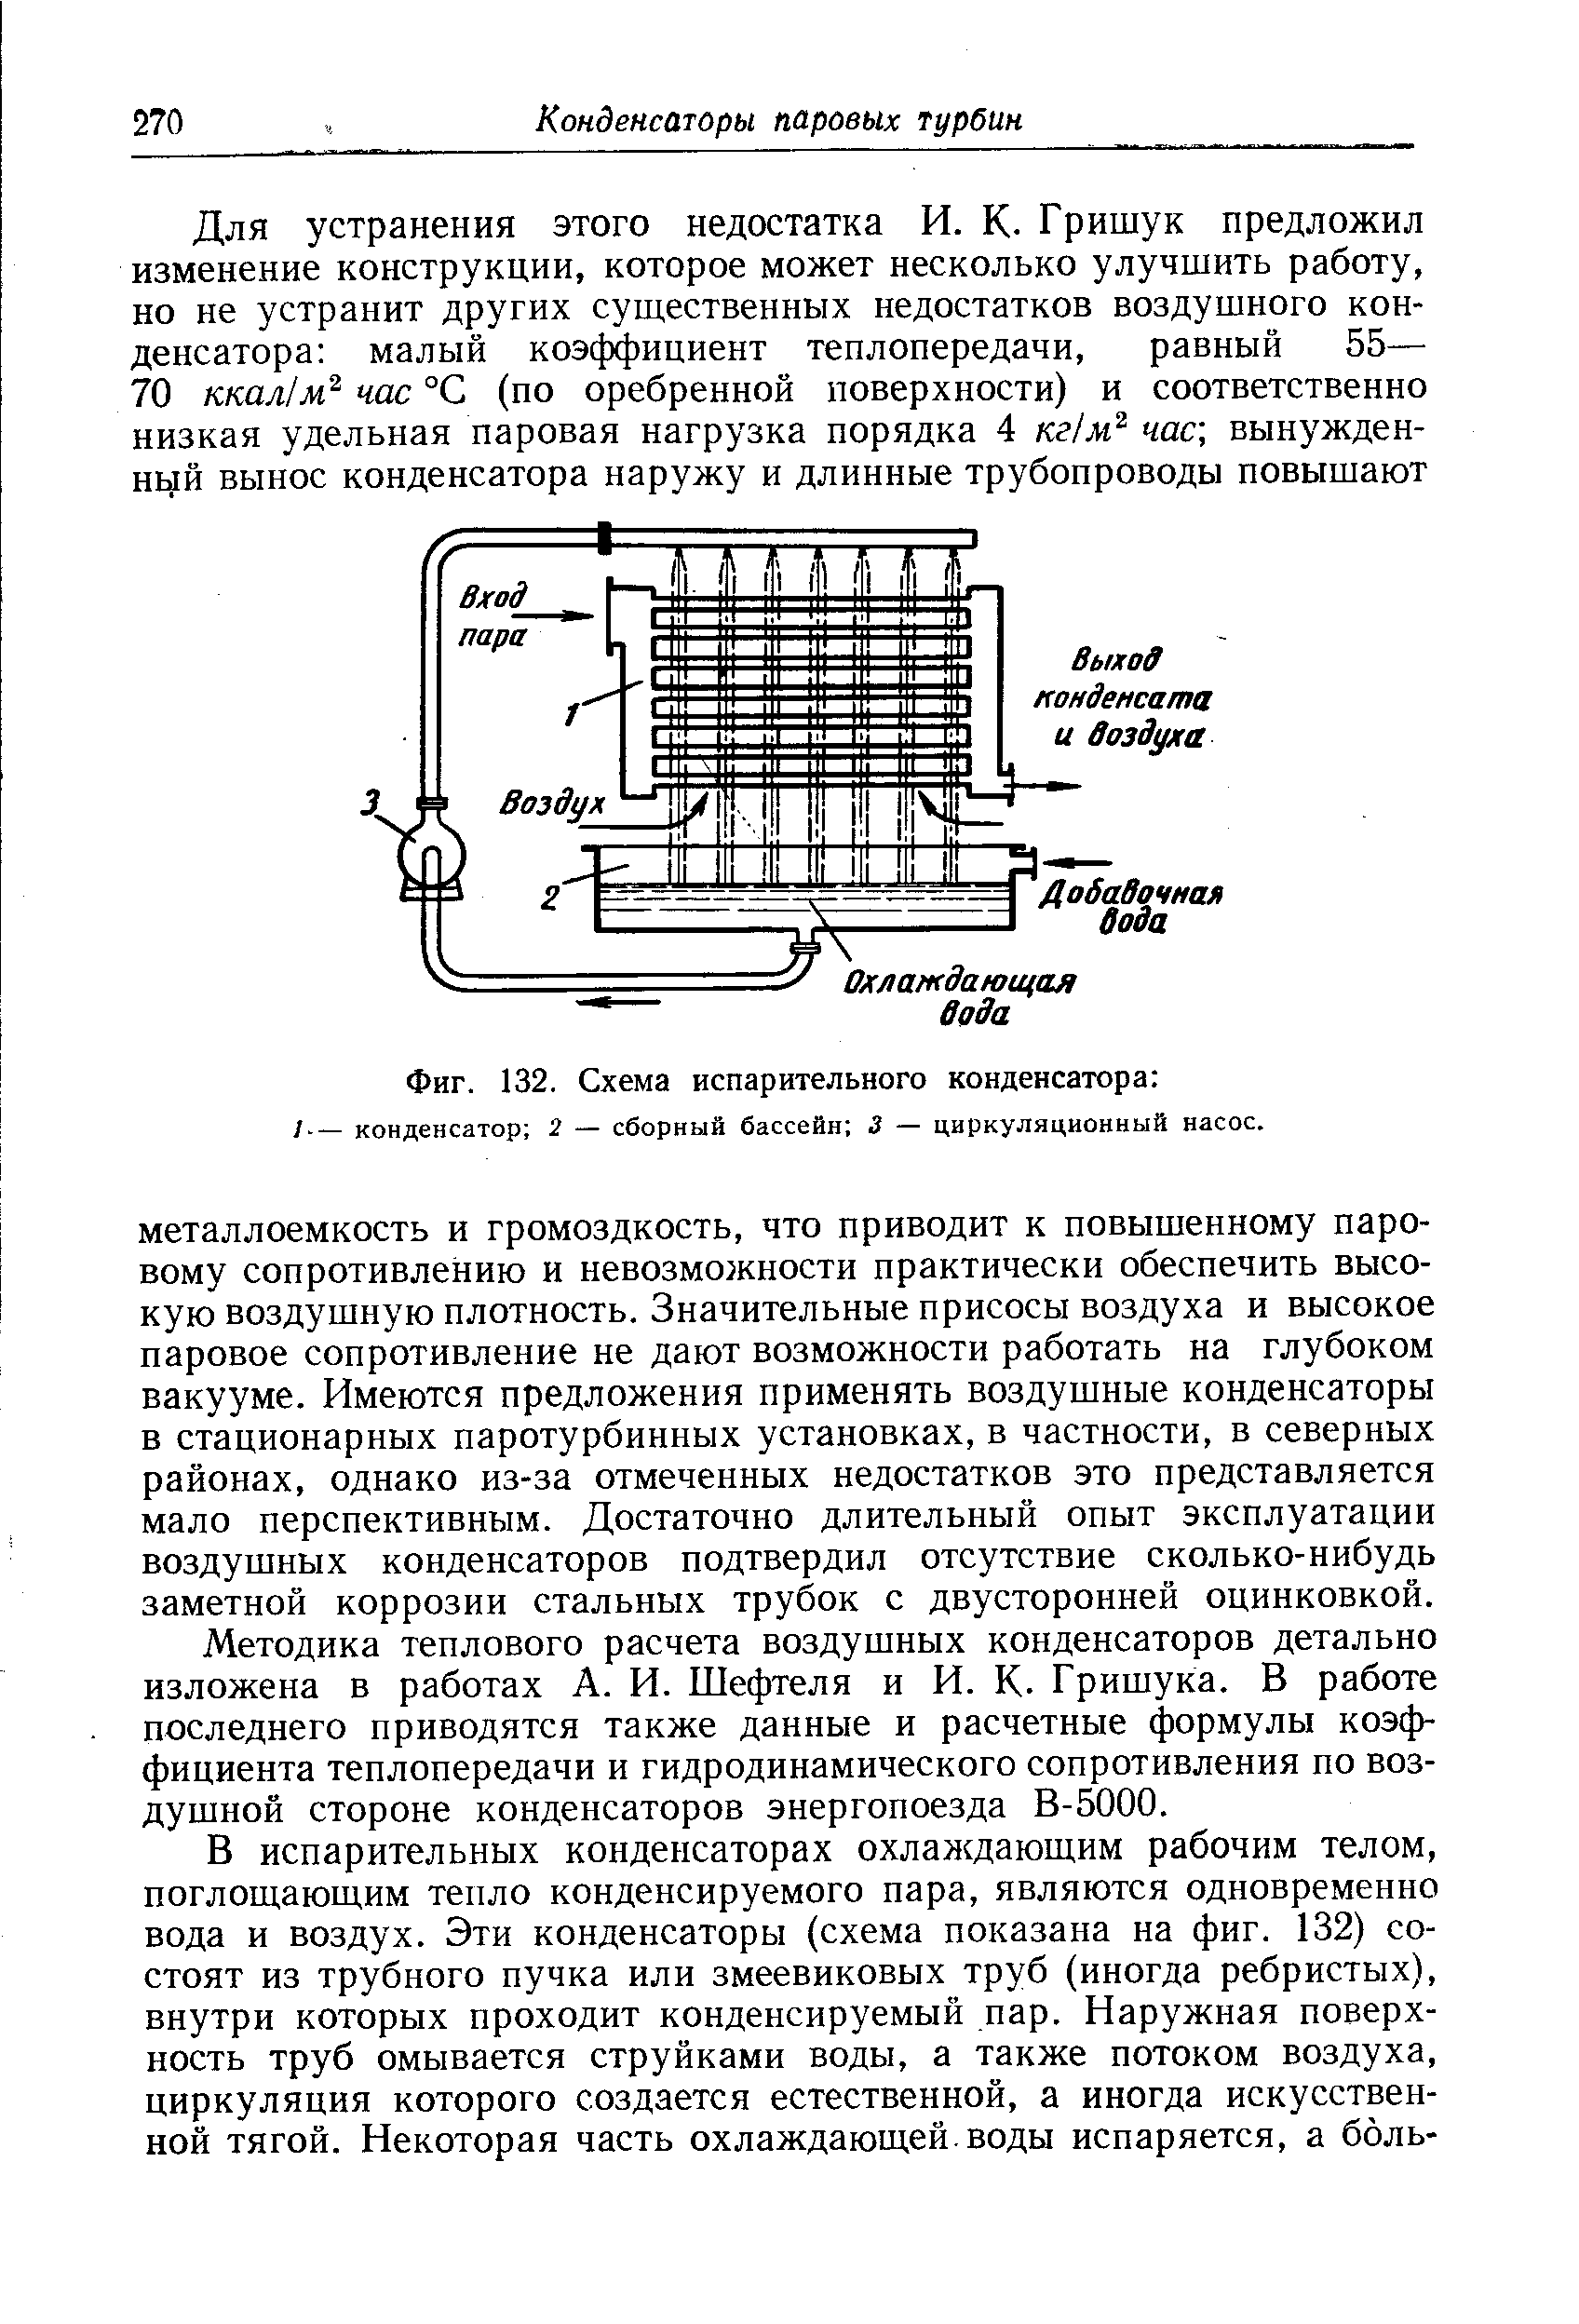 Фиг. 132. Схема испарительного конденсатора 
